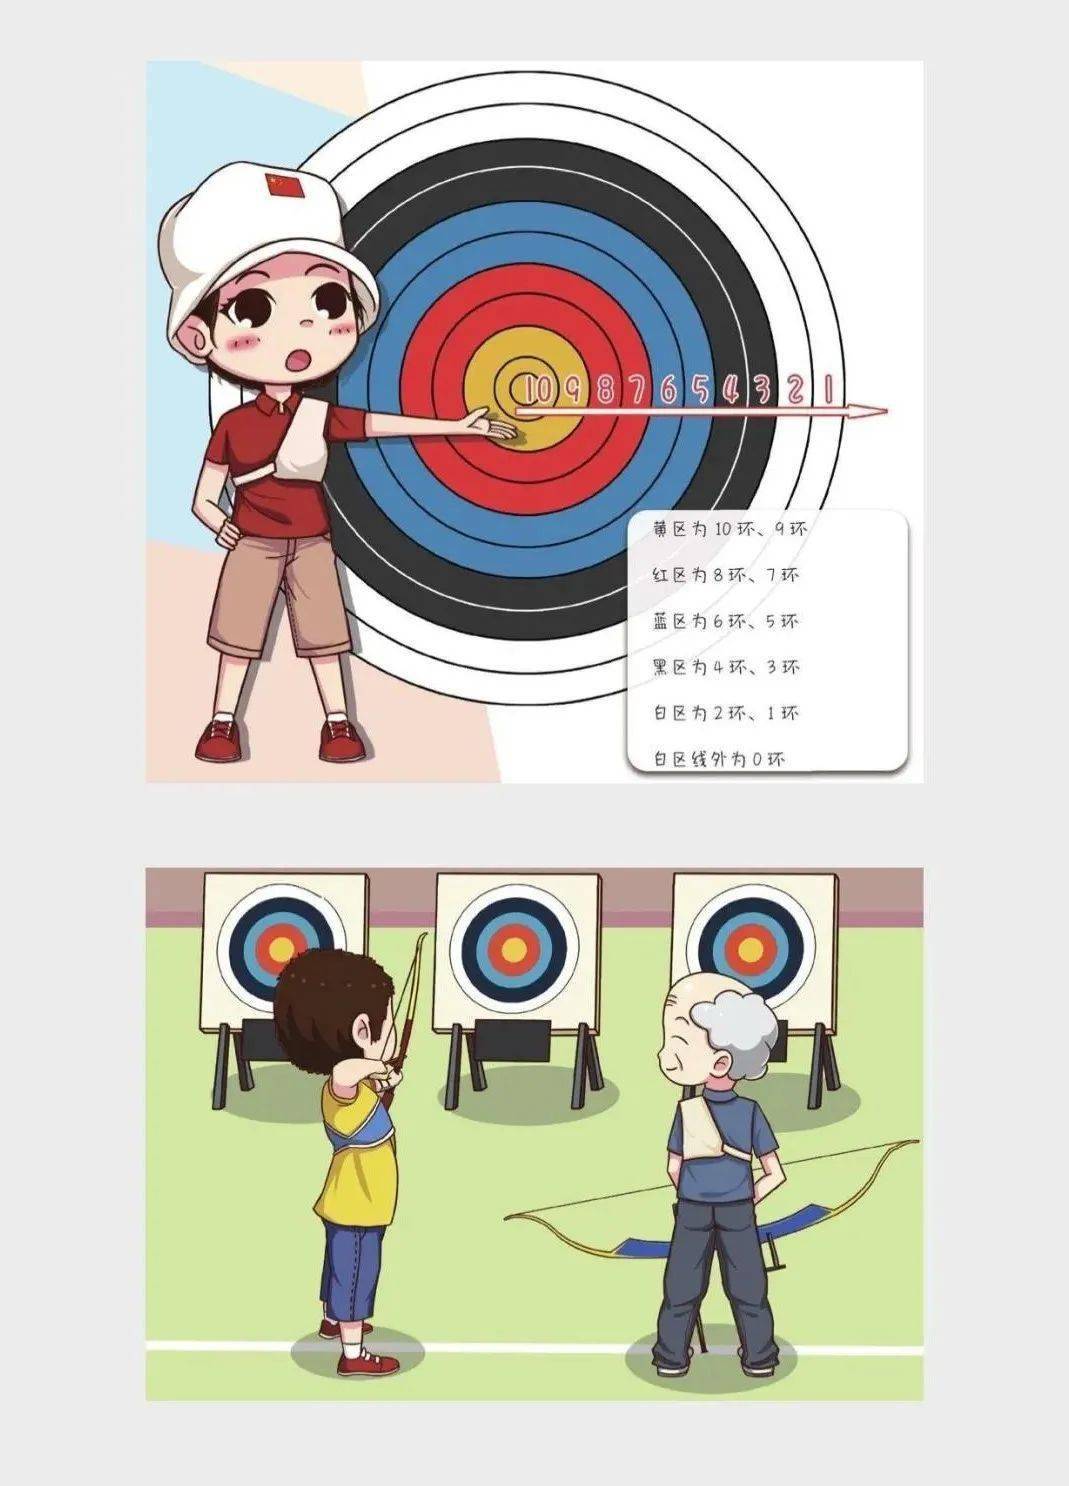 张娟娟出版射箭漫画书奥运冠军助力青岛打造射箭之都